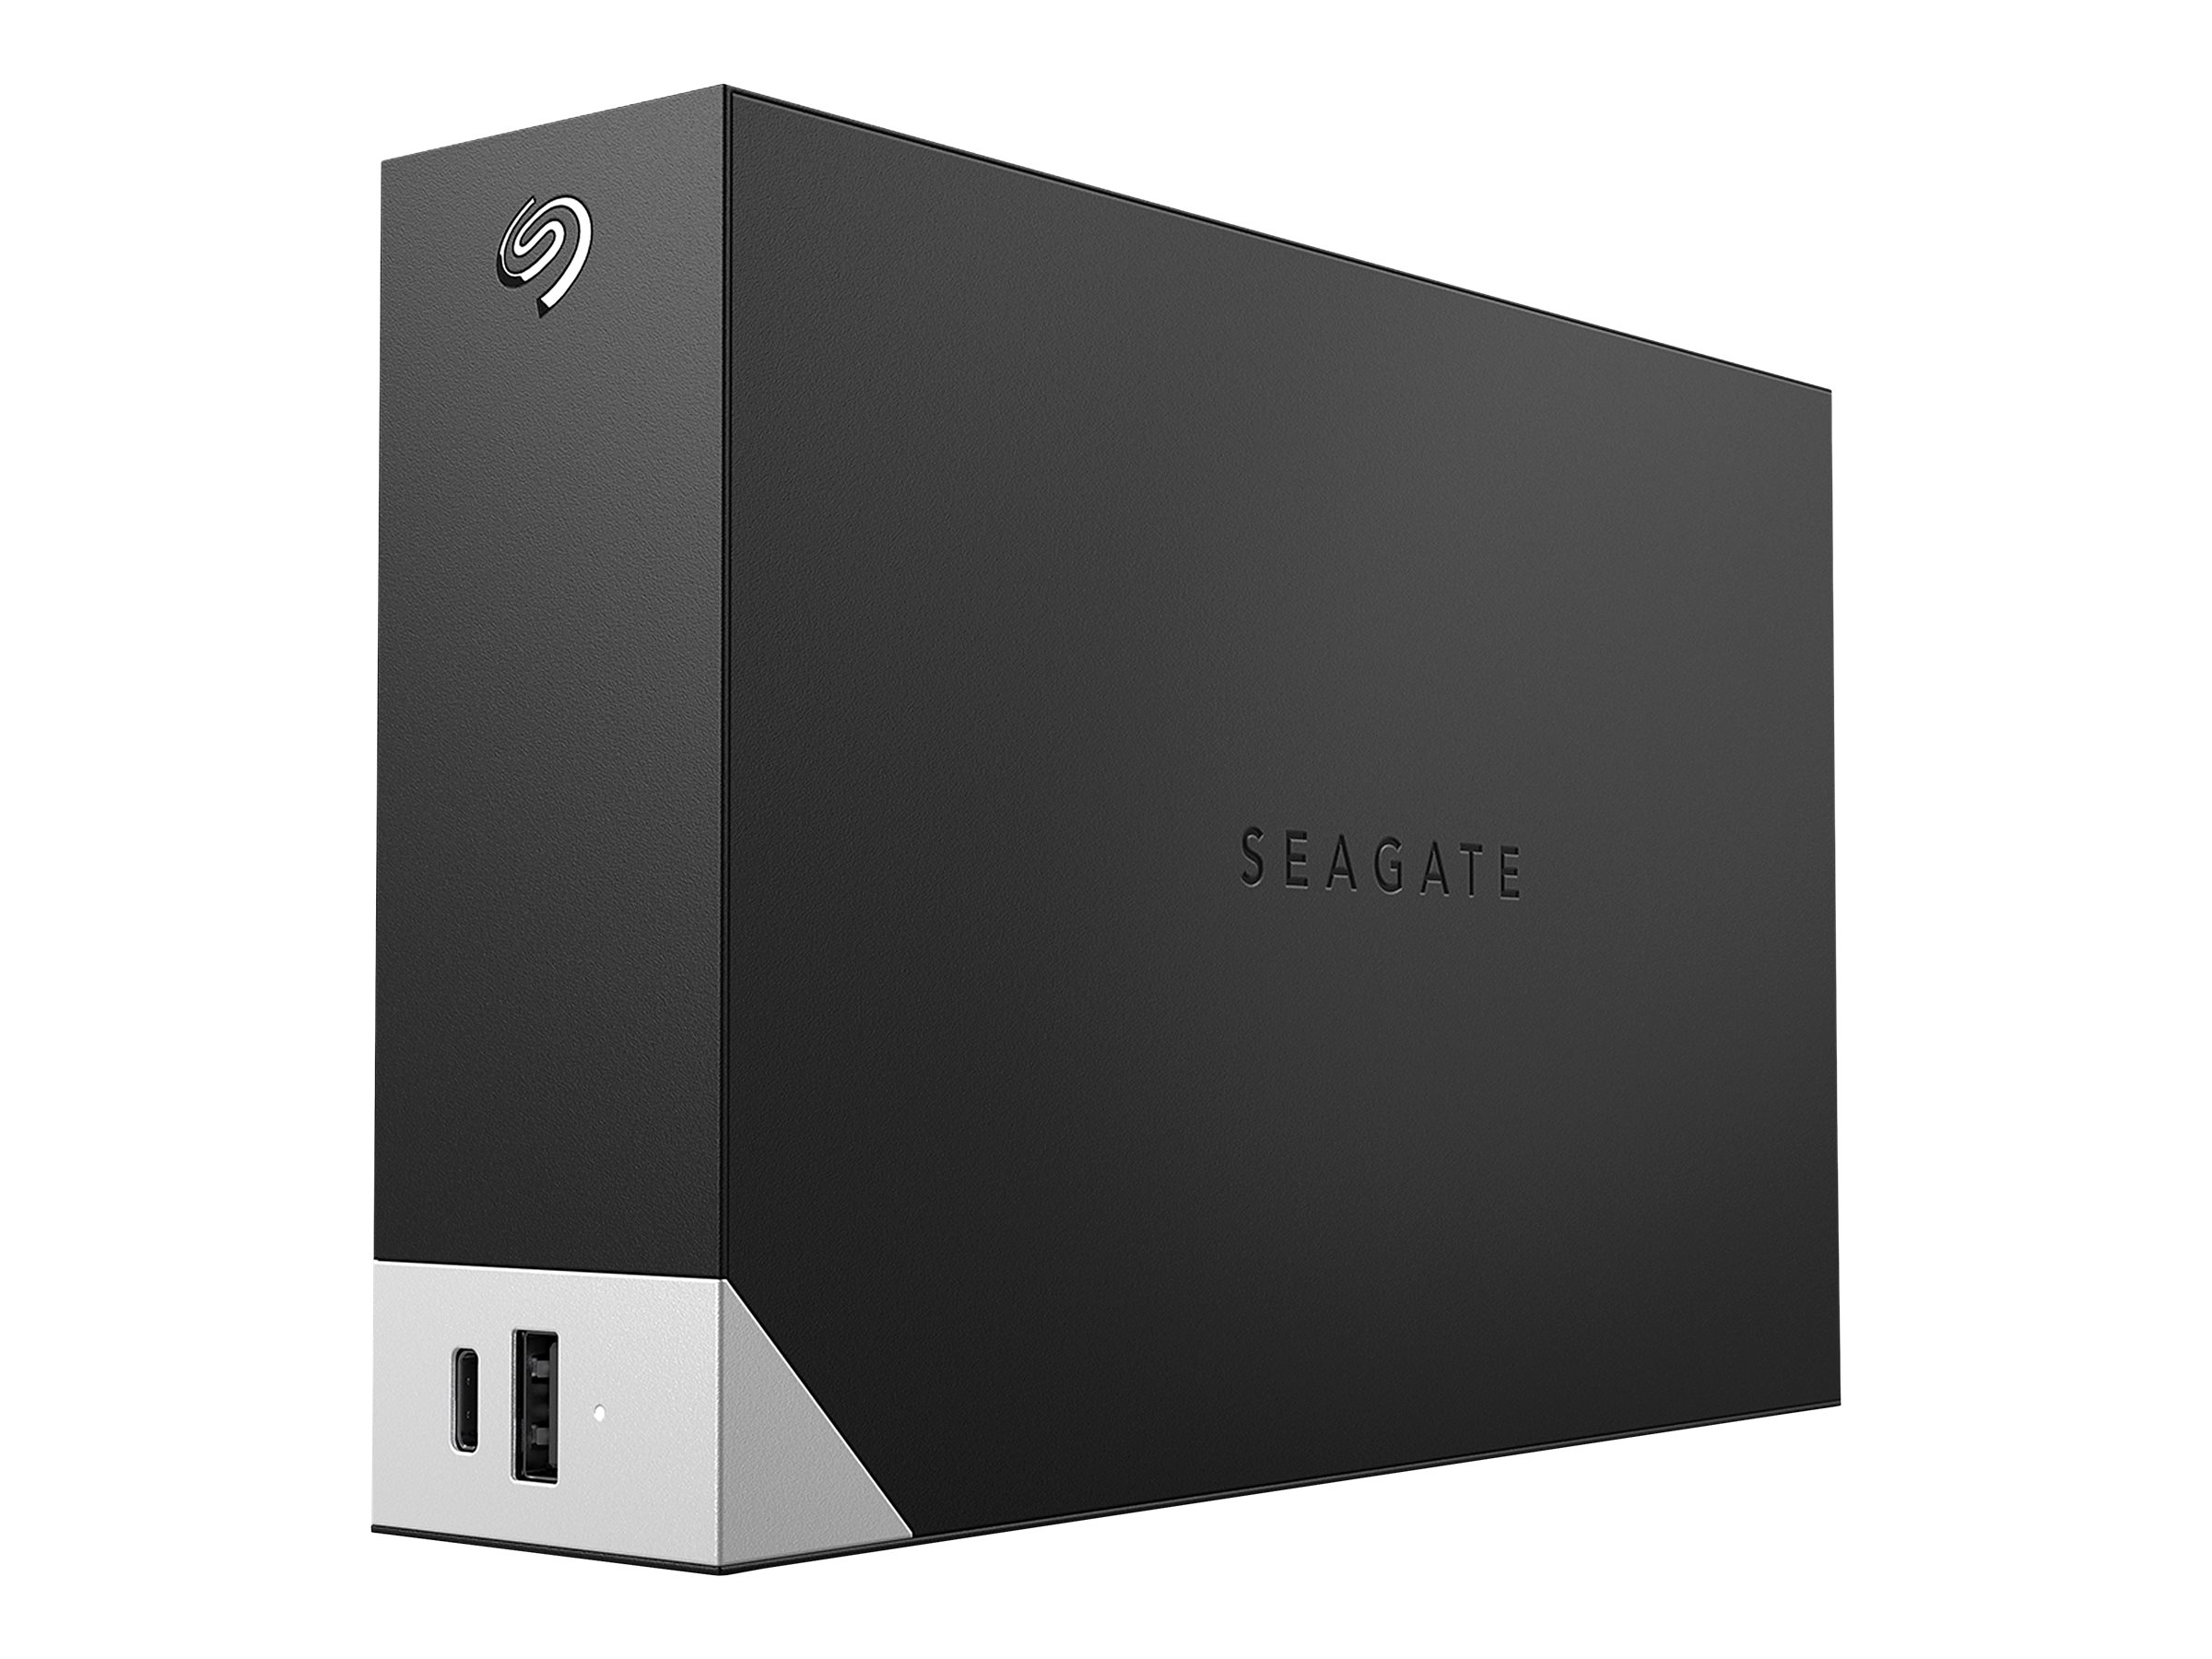 Seagate One Touch with hub STLC4000400 - Disque dur - 4 To - externe (de bureau) - USB 3.0 - noir - avec Seagate Rescue Data Recovery - STLC4000400 - Disques durs externes